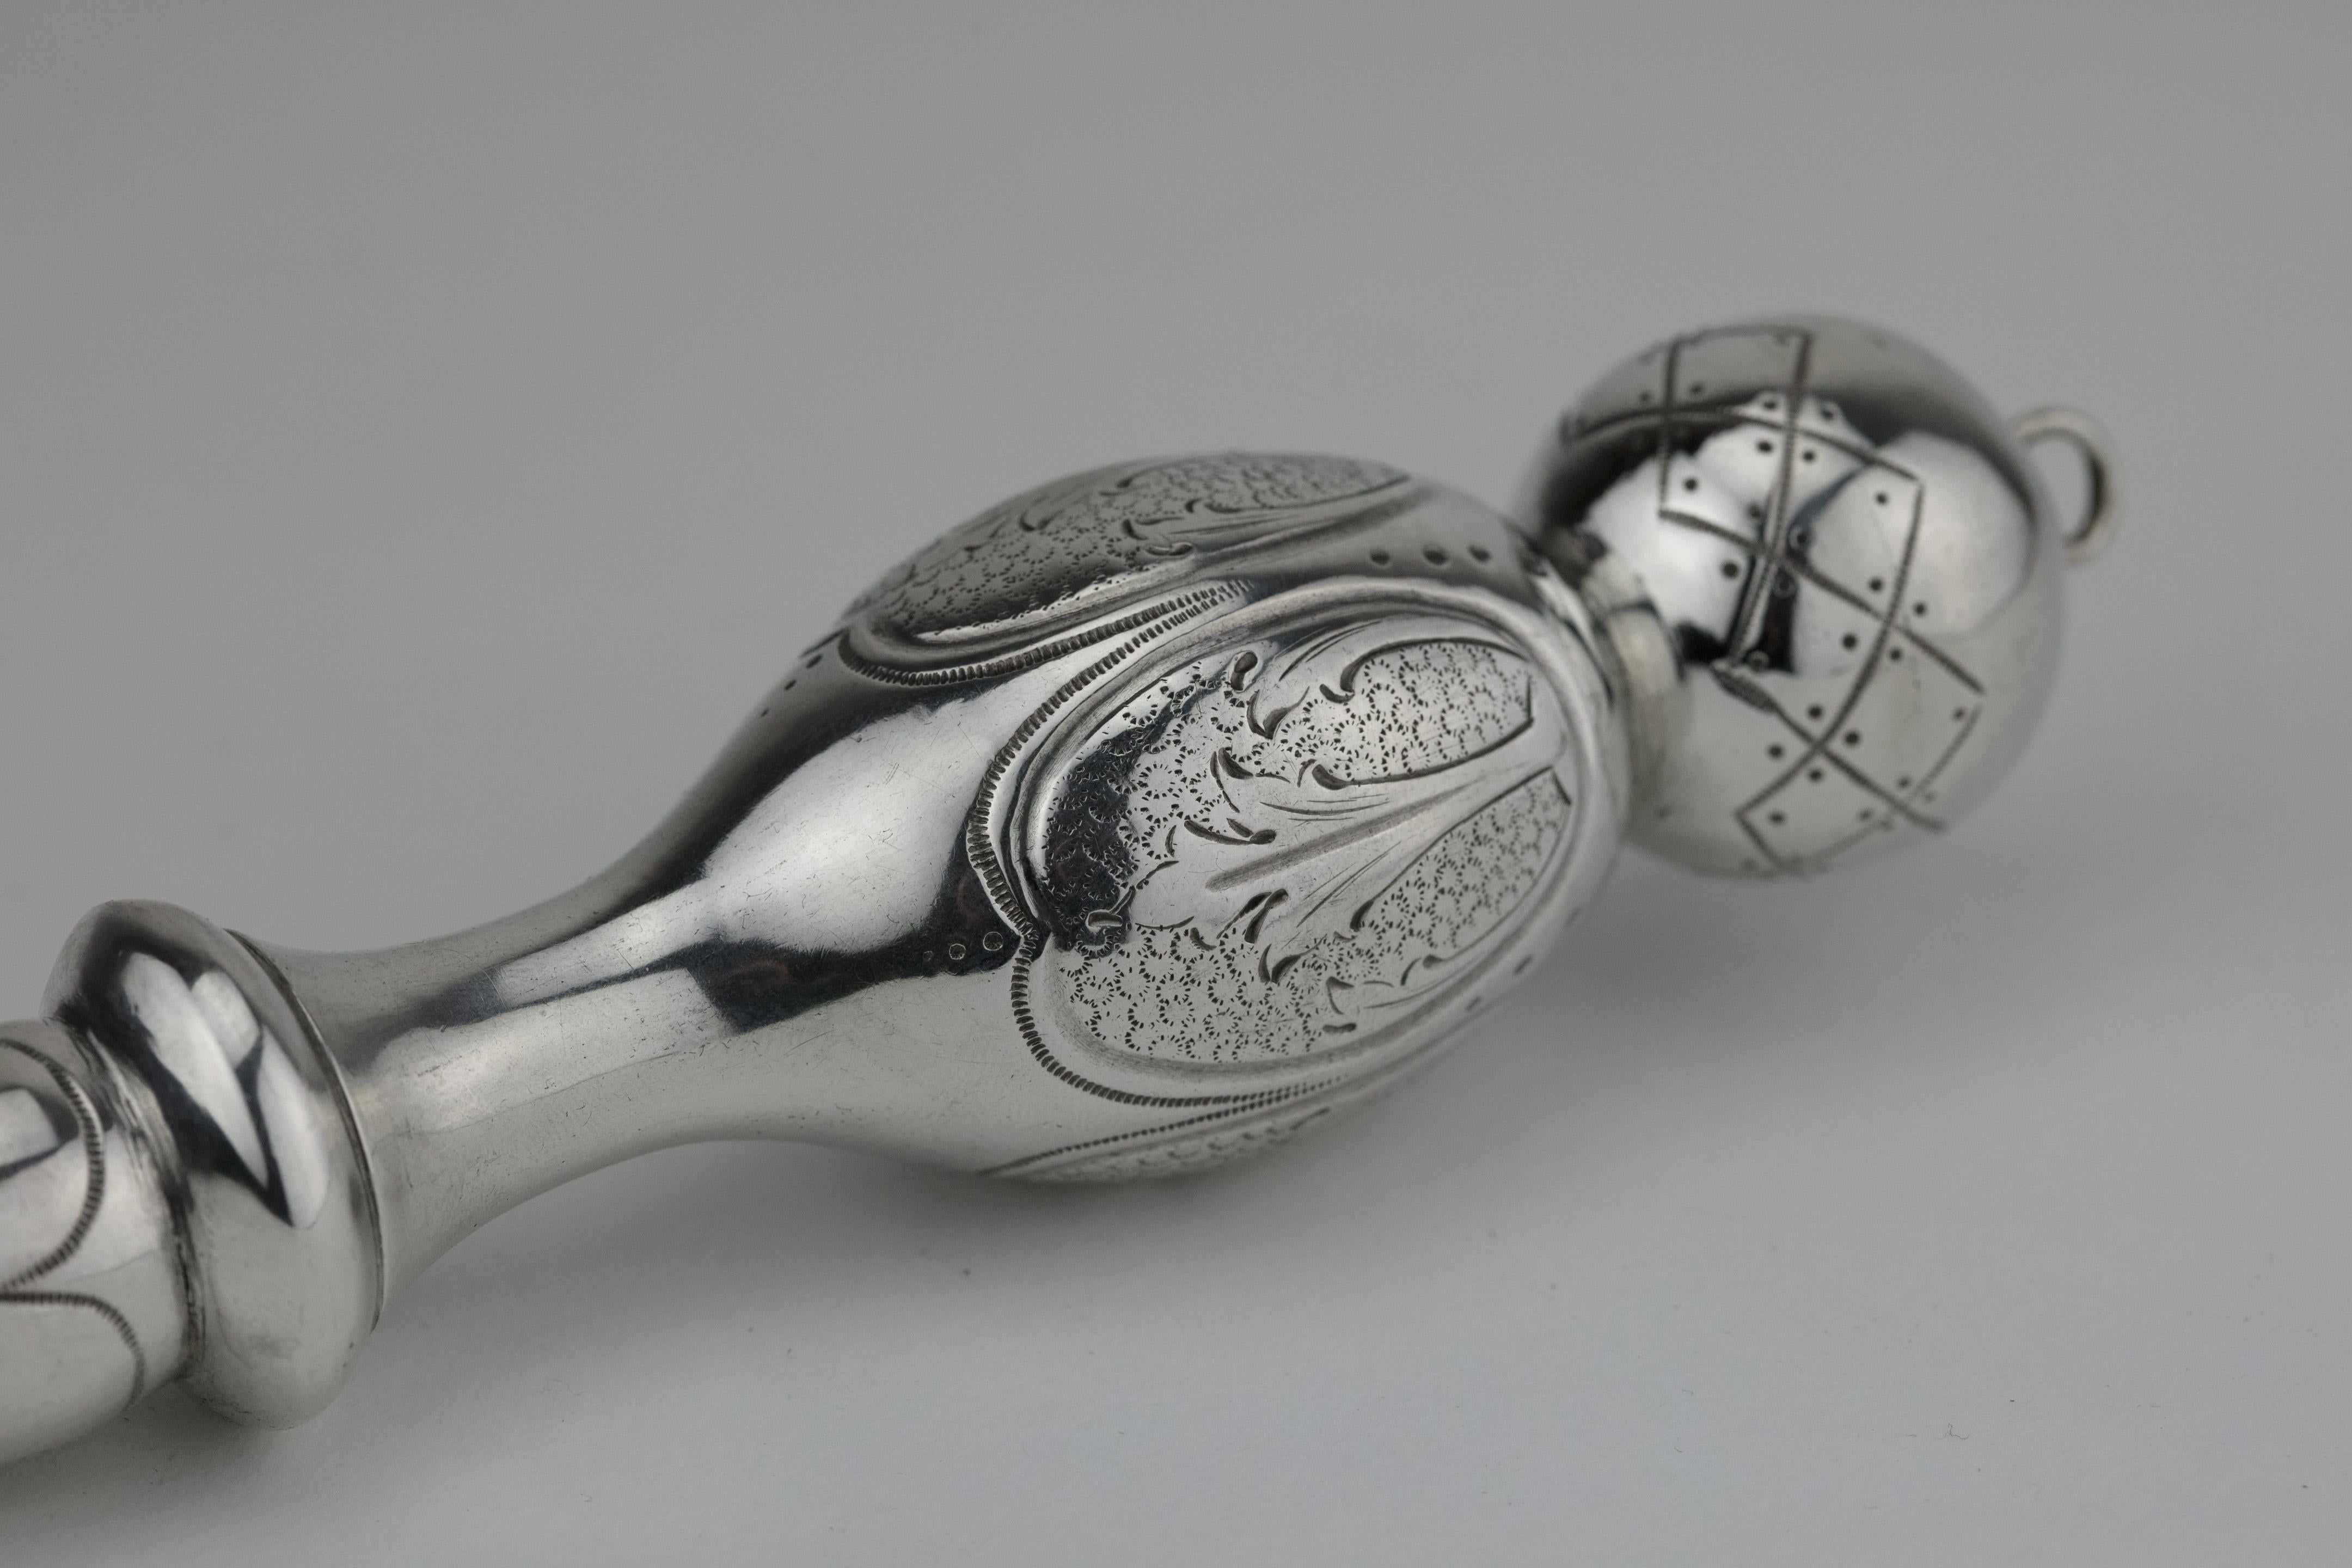 Handgefertigter Thora-Zeiger aus Silber, Deutschland, um 1890.
Der Griff besteht aus einem knaufförmigen Intervall, das mit floralen Ornamenten graviert ist.
Das Leseende hat die Form einer Hand mit einem Zeigefinger. 
Eine Aufhängeschlaufe ist